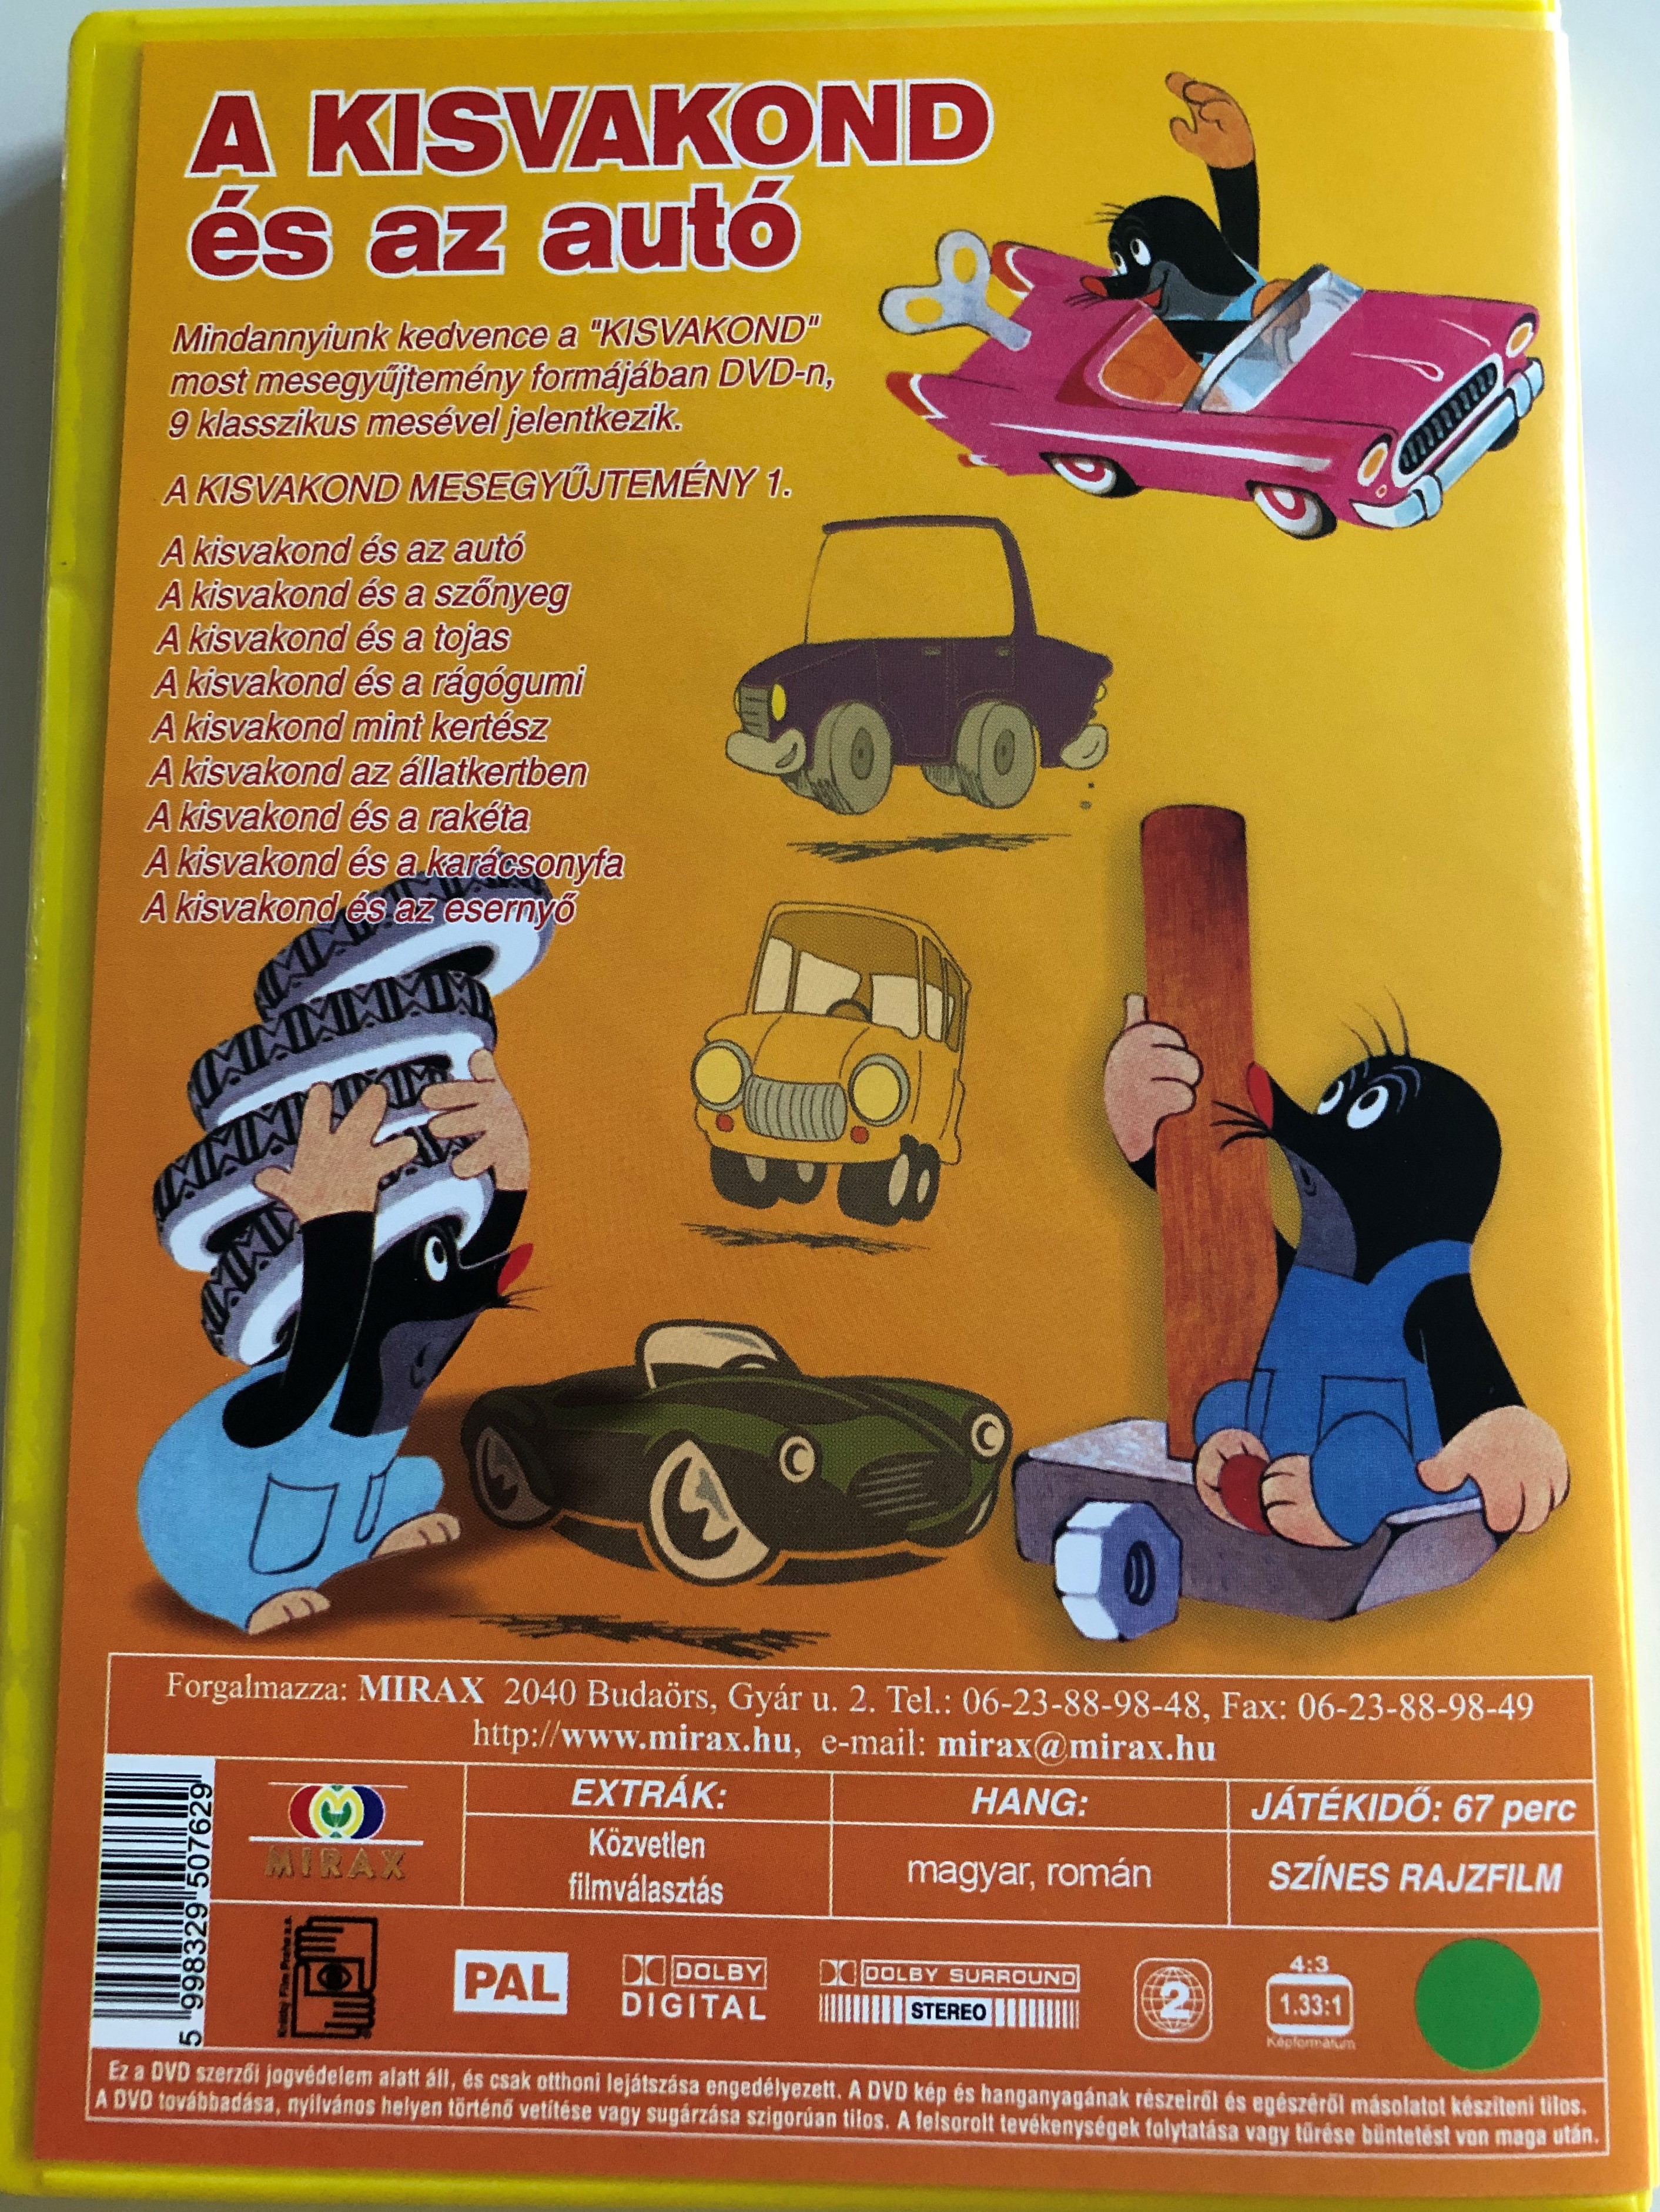 Krtek (Little Mole) and the Car Series 1. DVD 2000 Kisvakond és az autó -  Kisvakond mesegyűjtemény 1. / 9 episodes on disc / Classic Czech Cartoon /  Created by Zdeněk Miler - bibleinmylanguage